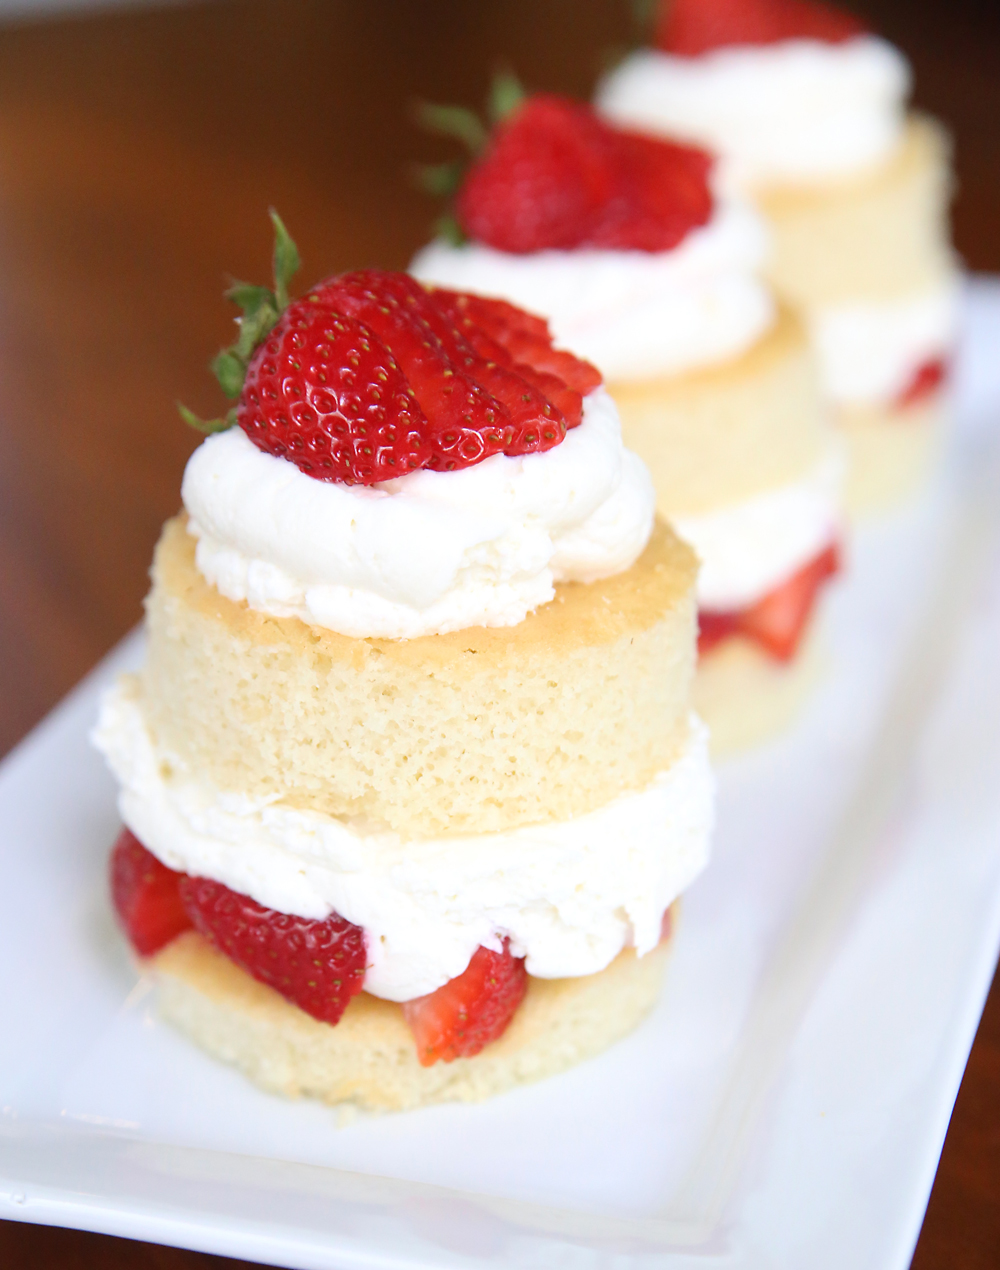 Strawberry shortcake, layers of cake, strawberries and white chocolate cream